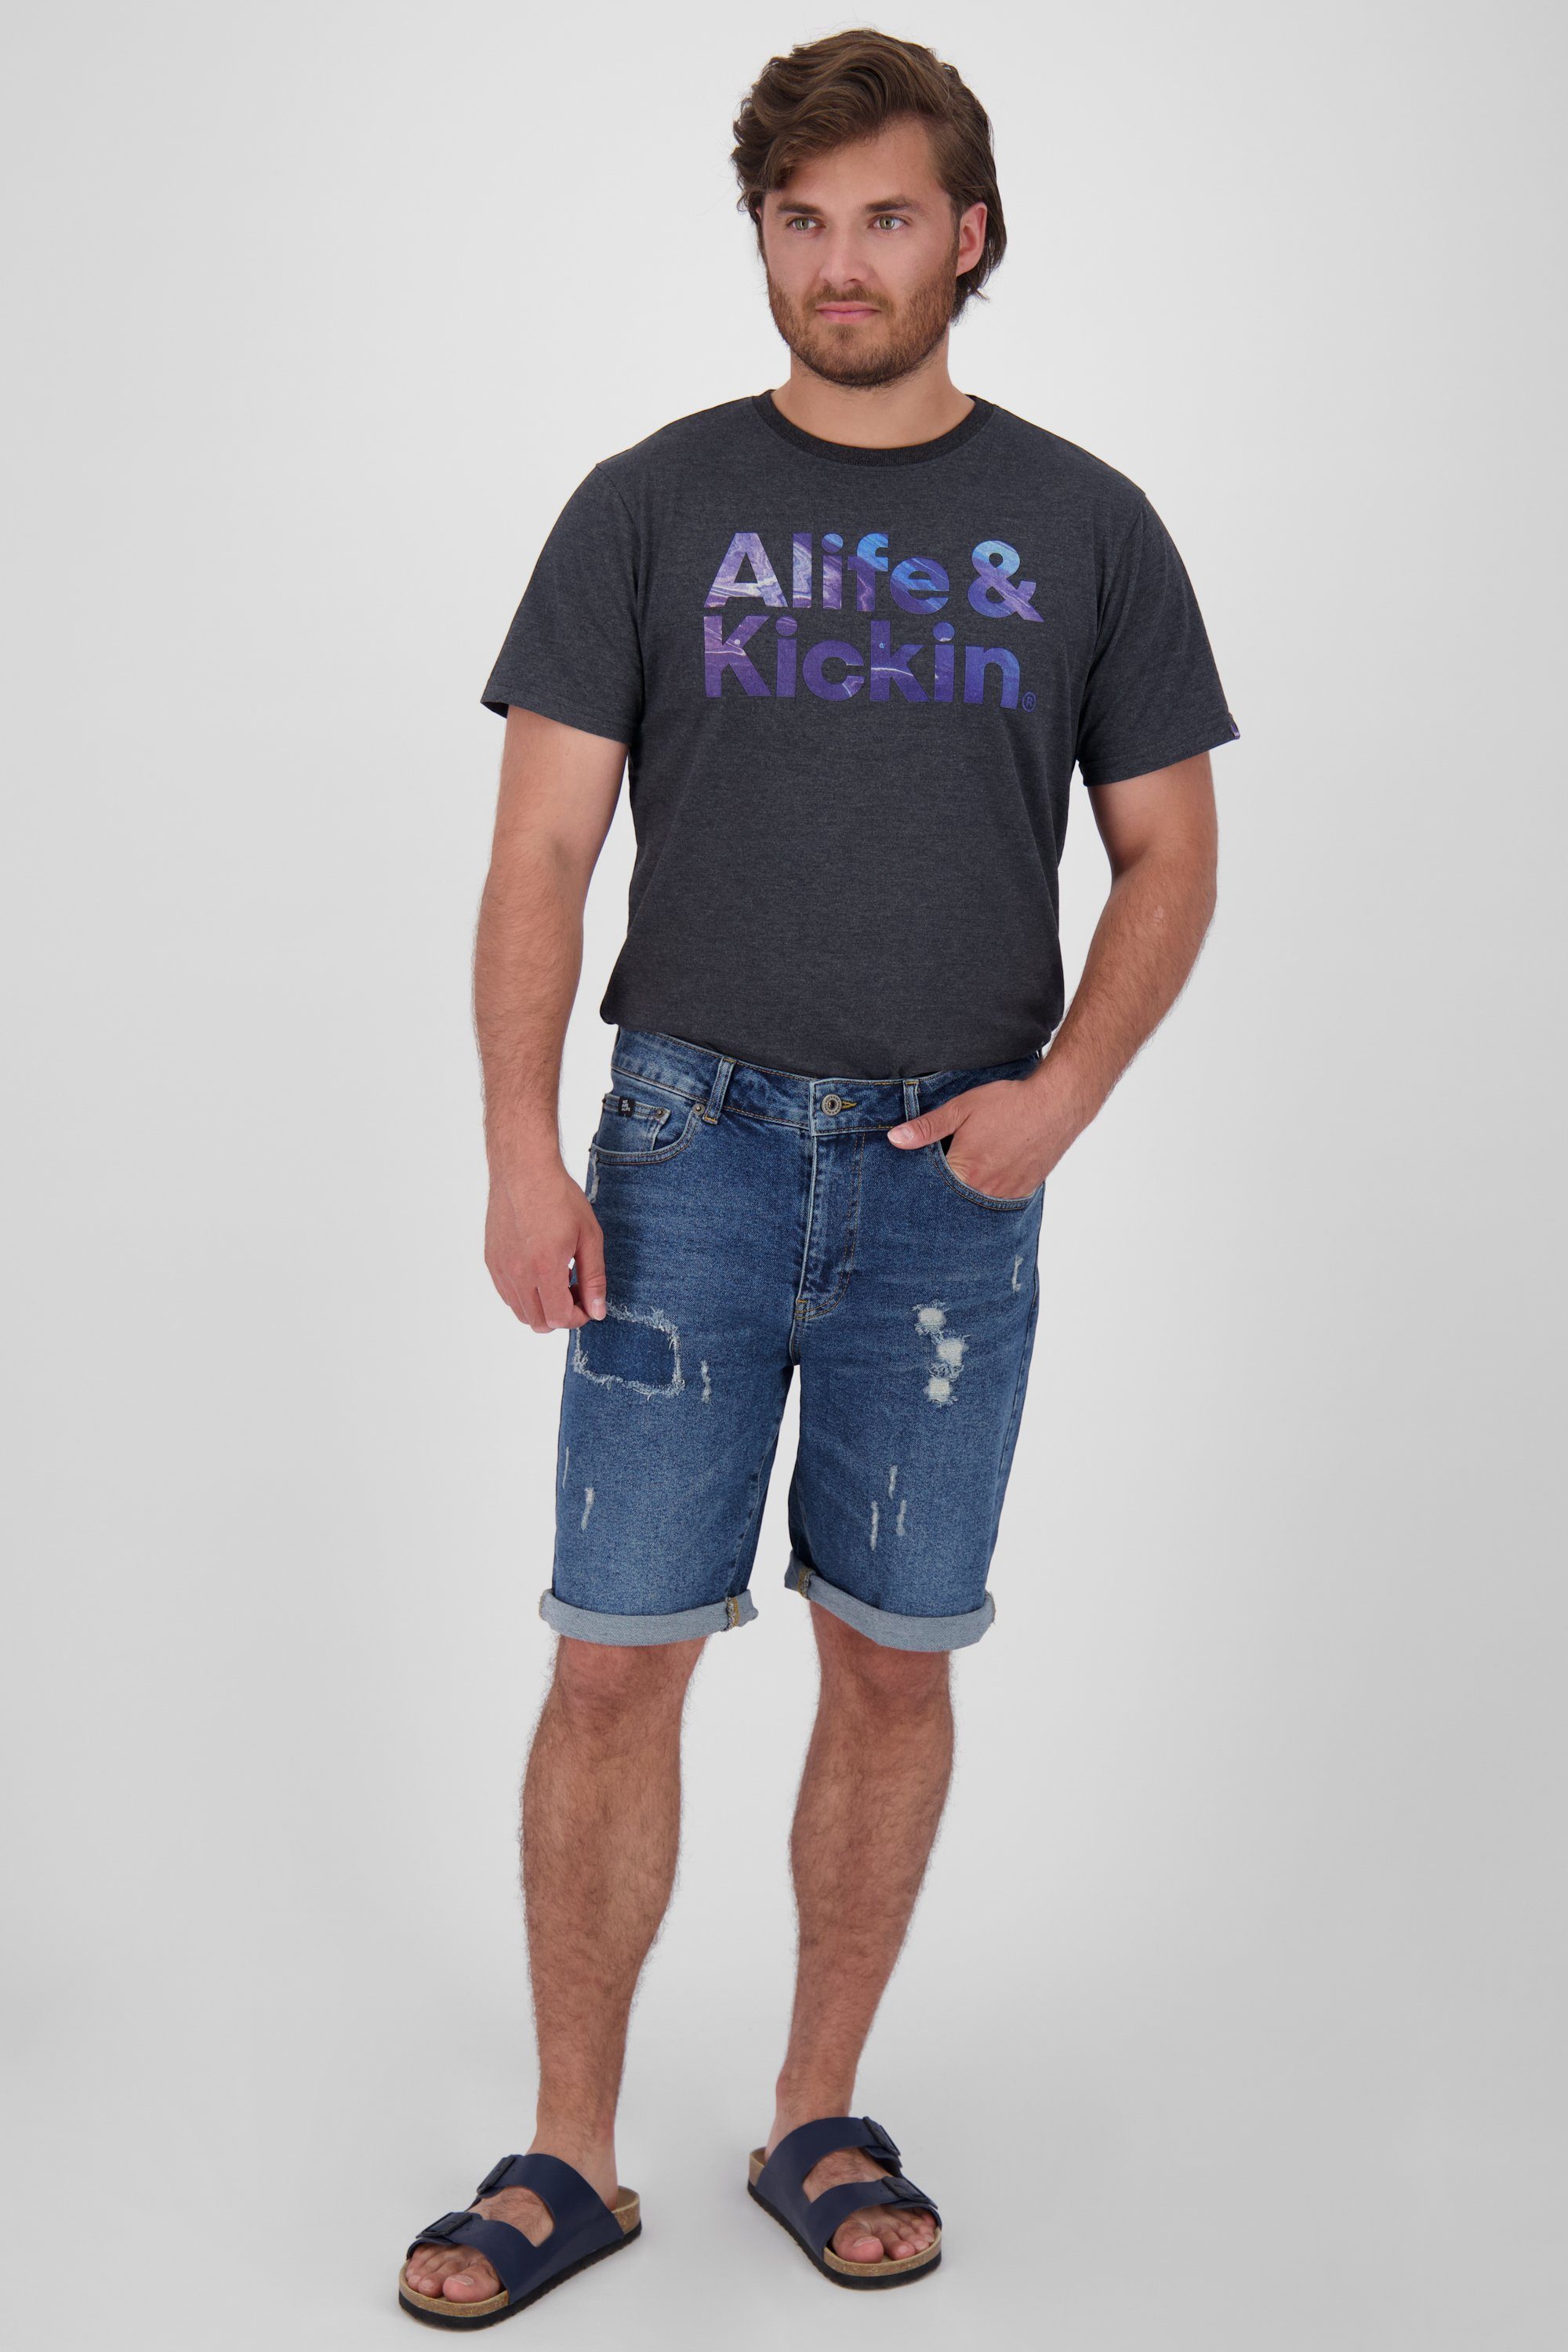 DNM Alife Shorts denim kurze Jeansshorts, Herren MorganAK A Hose dark Kickin & washed Shorts